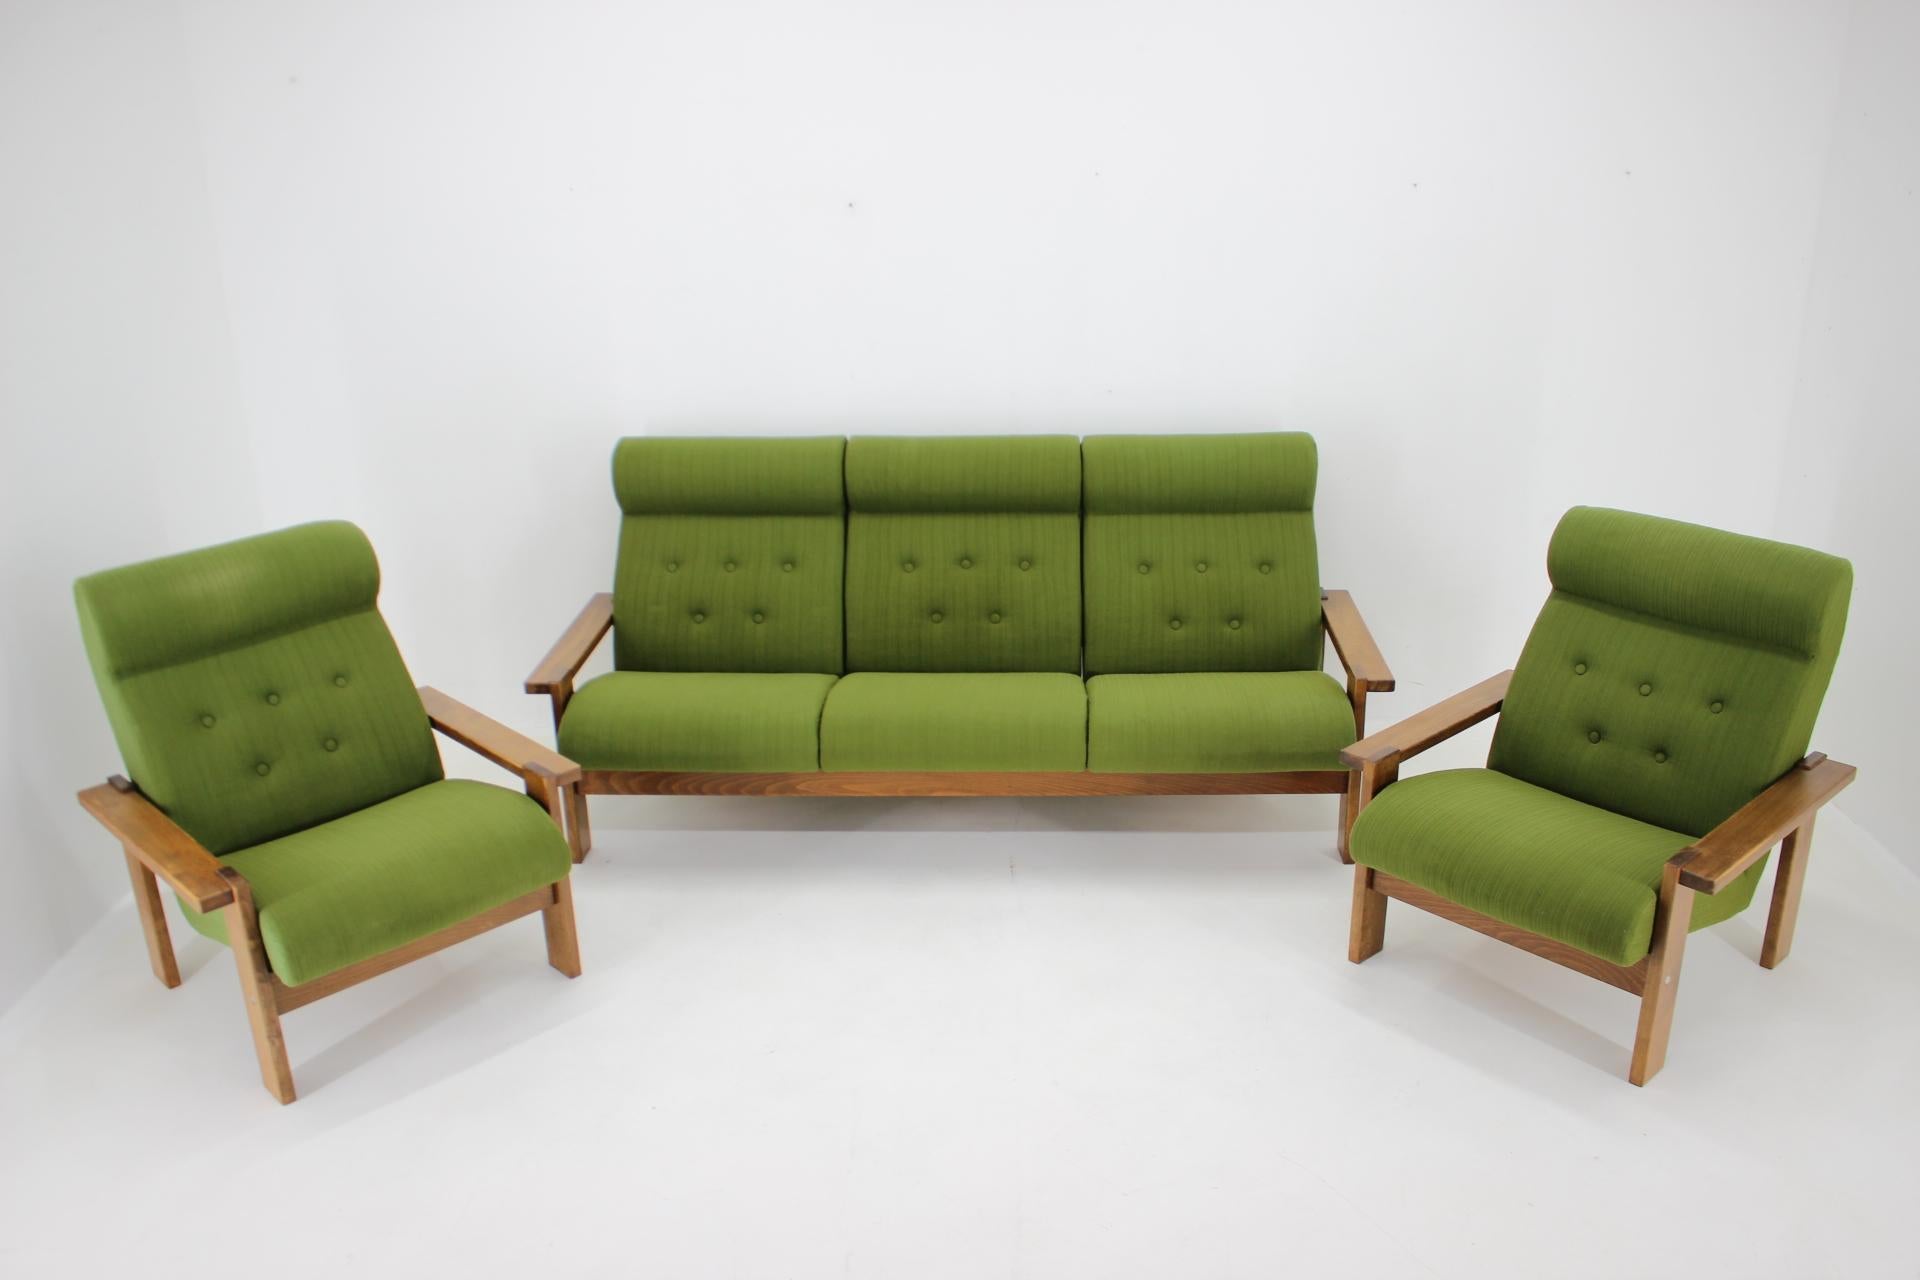  - buone condizioni originali con lievi segni d'uso 
- Dimensioni del divano: 86x197x82